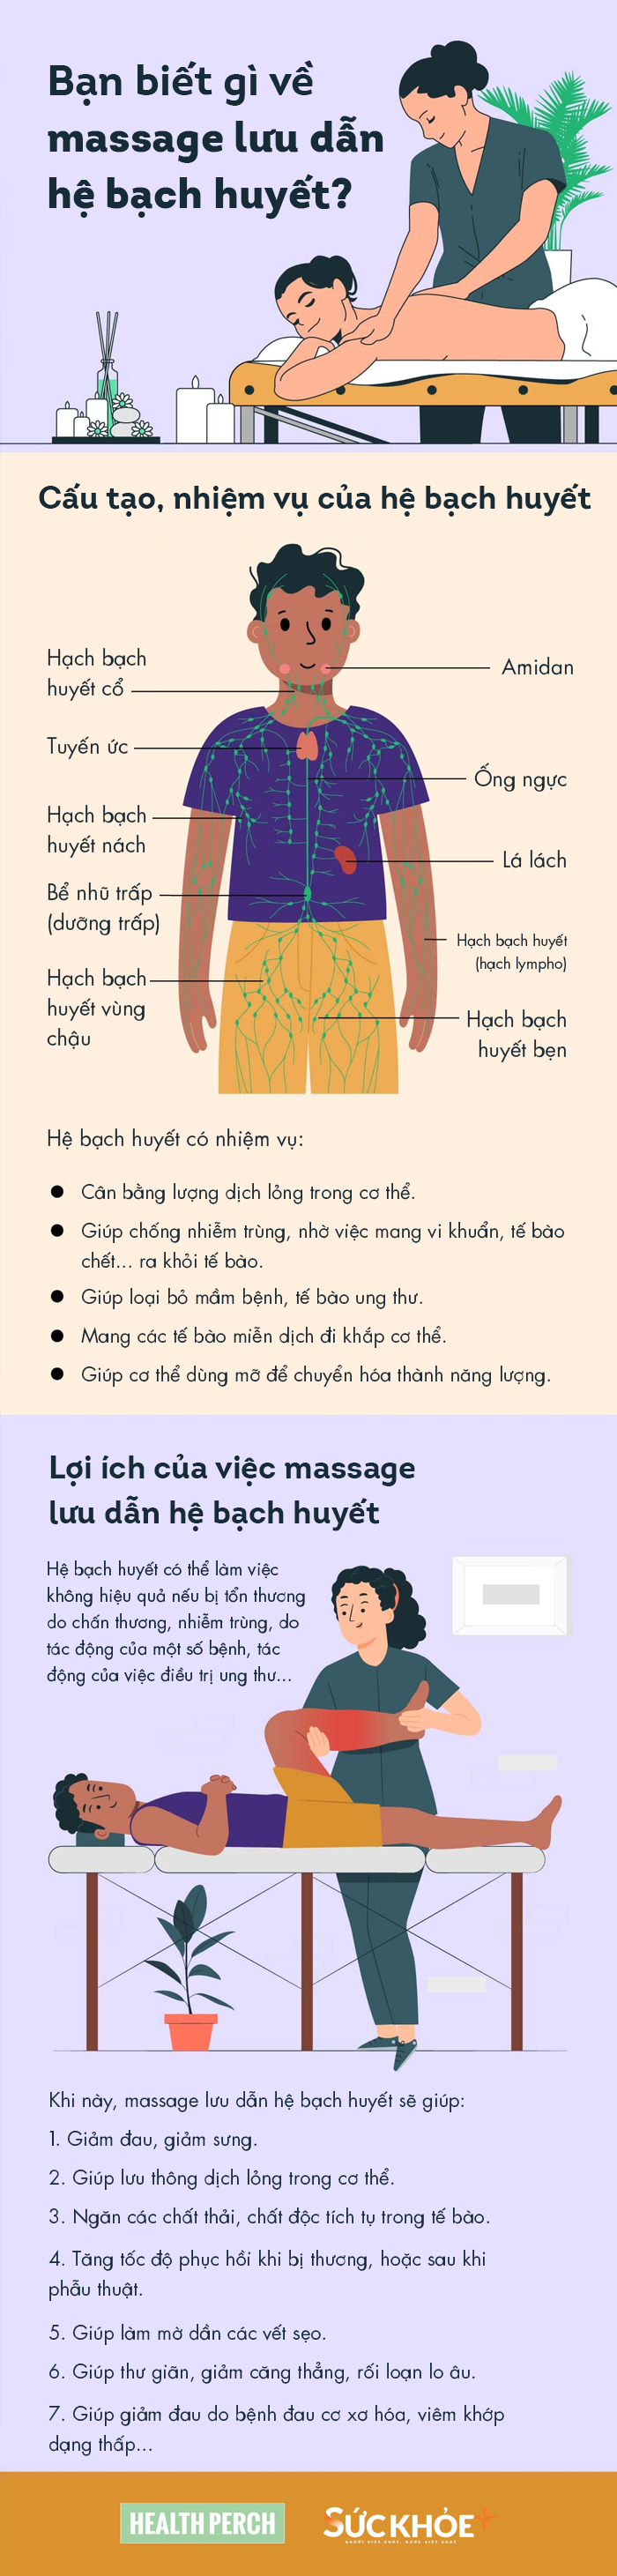 massage-bach-huyet